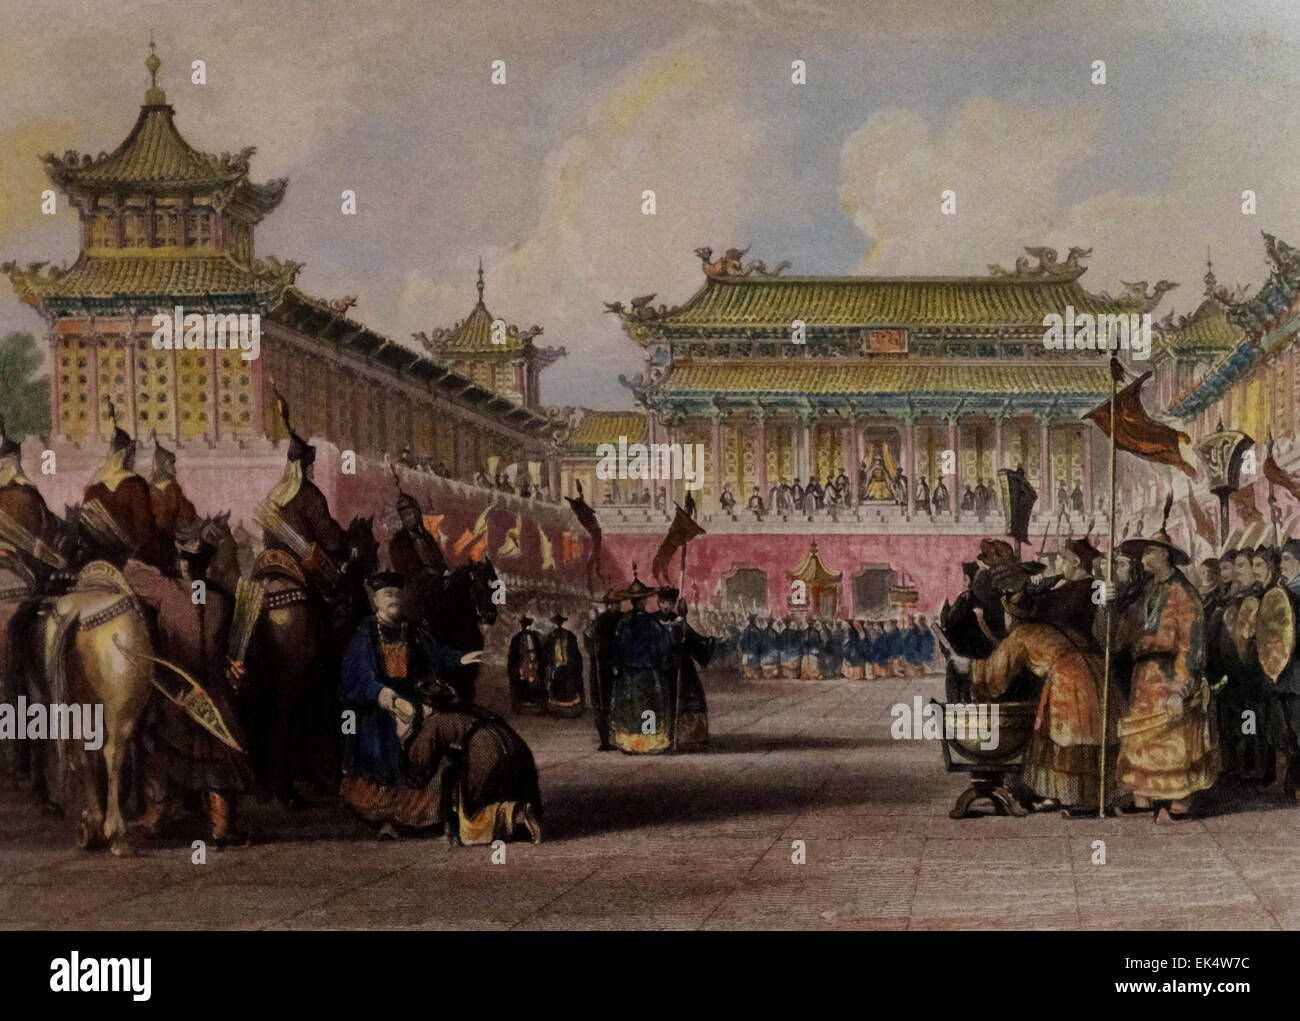 L'Empereur Daoguang examiner ses gardes, Palais de Beijing, Chine, 19e siècle Banque D'Images